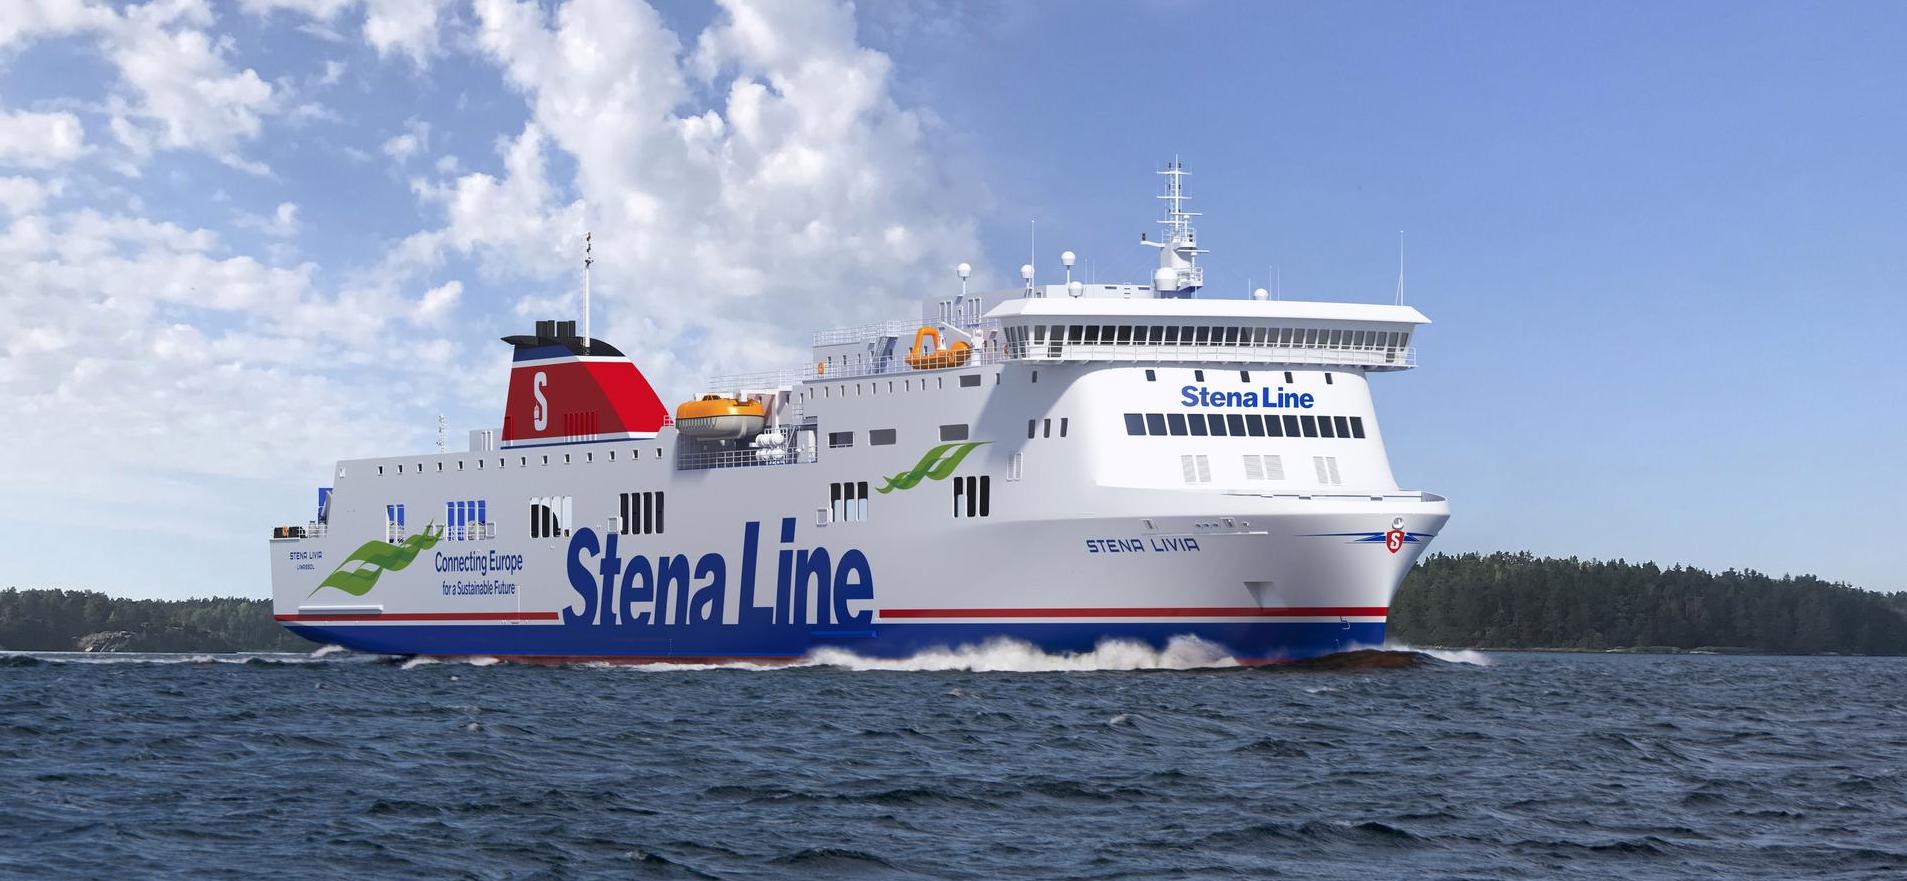 Foto do navio Stena Line - Stena Livia